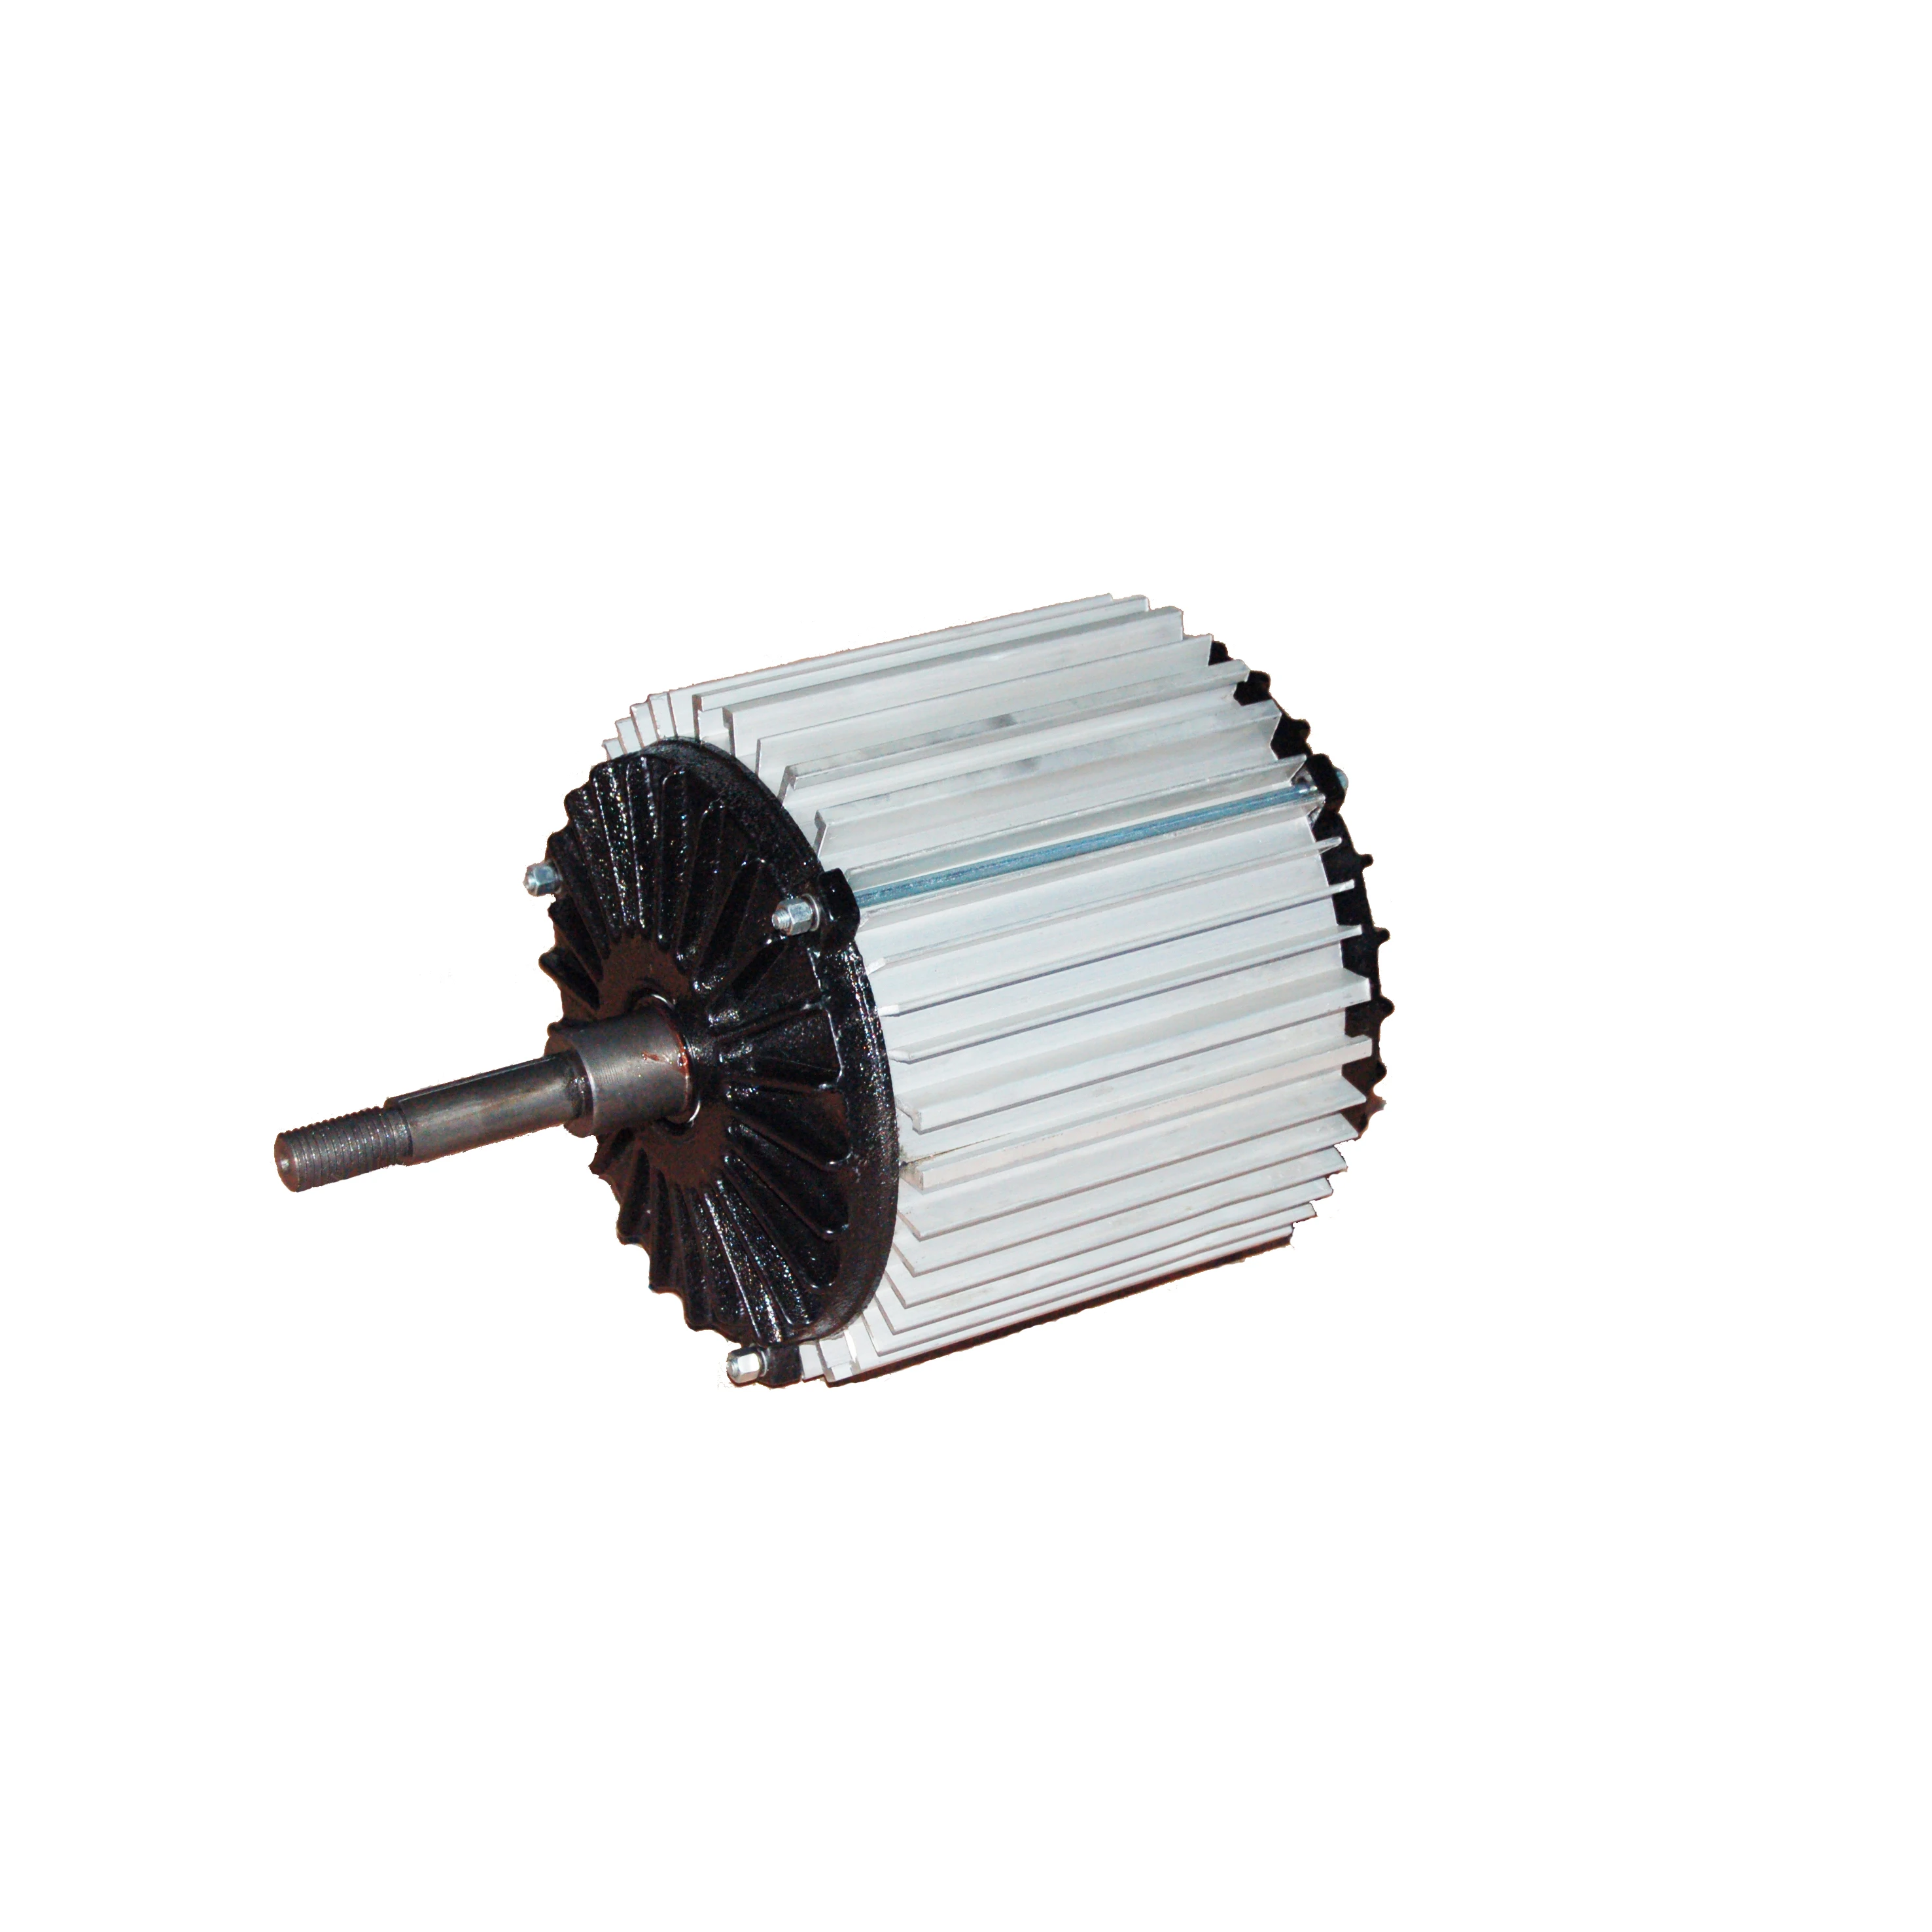 evaporative cooler fan motor